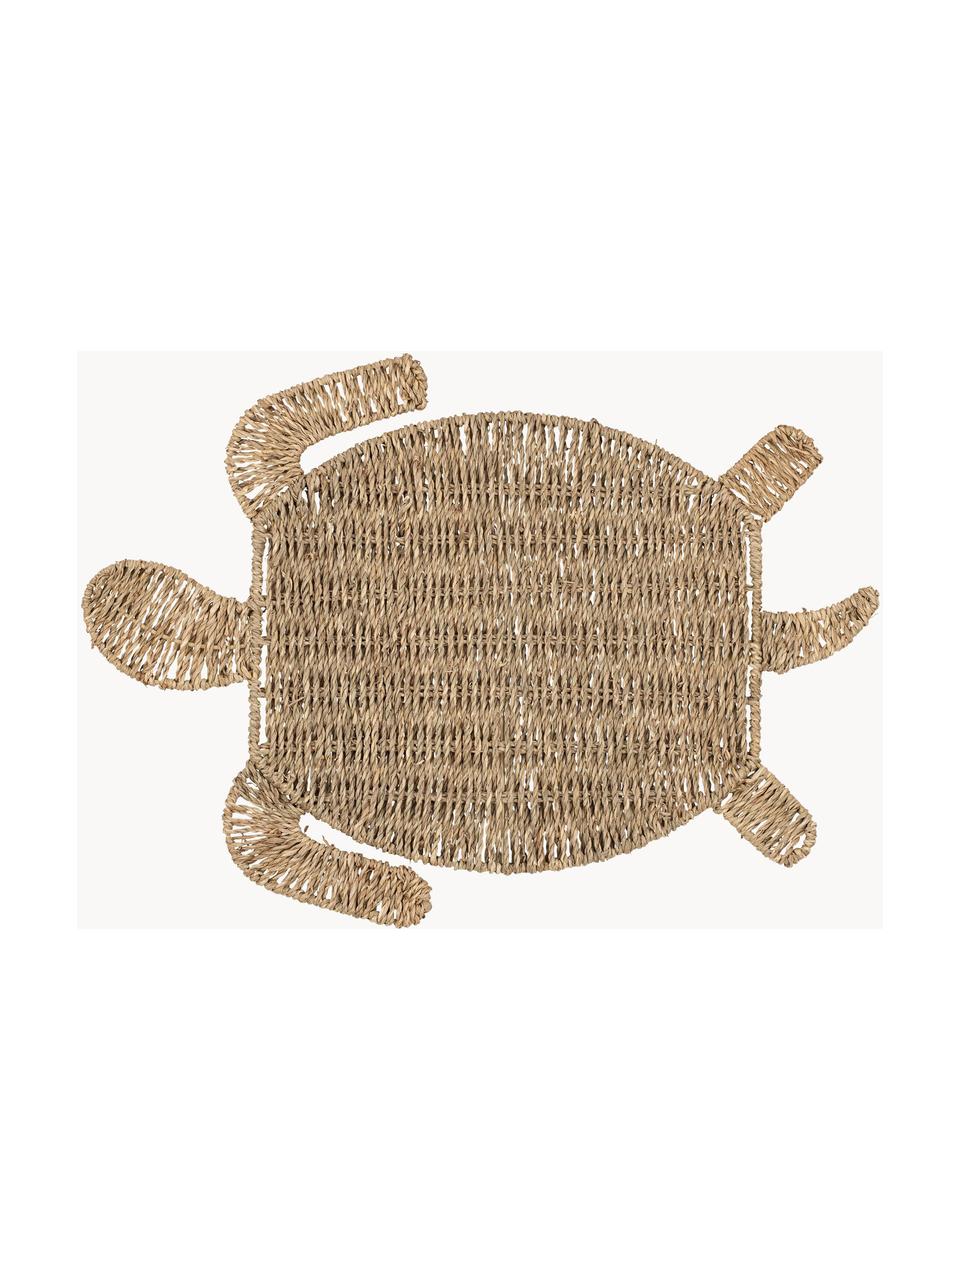 Tischset Sumatra aus Seegras in Schildkrötenform, Seegras, Braun, L 48 x B 36 cm